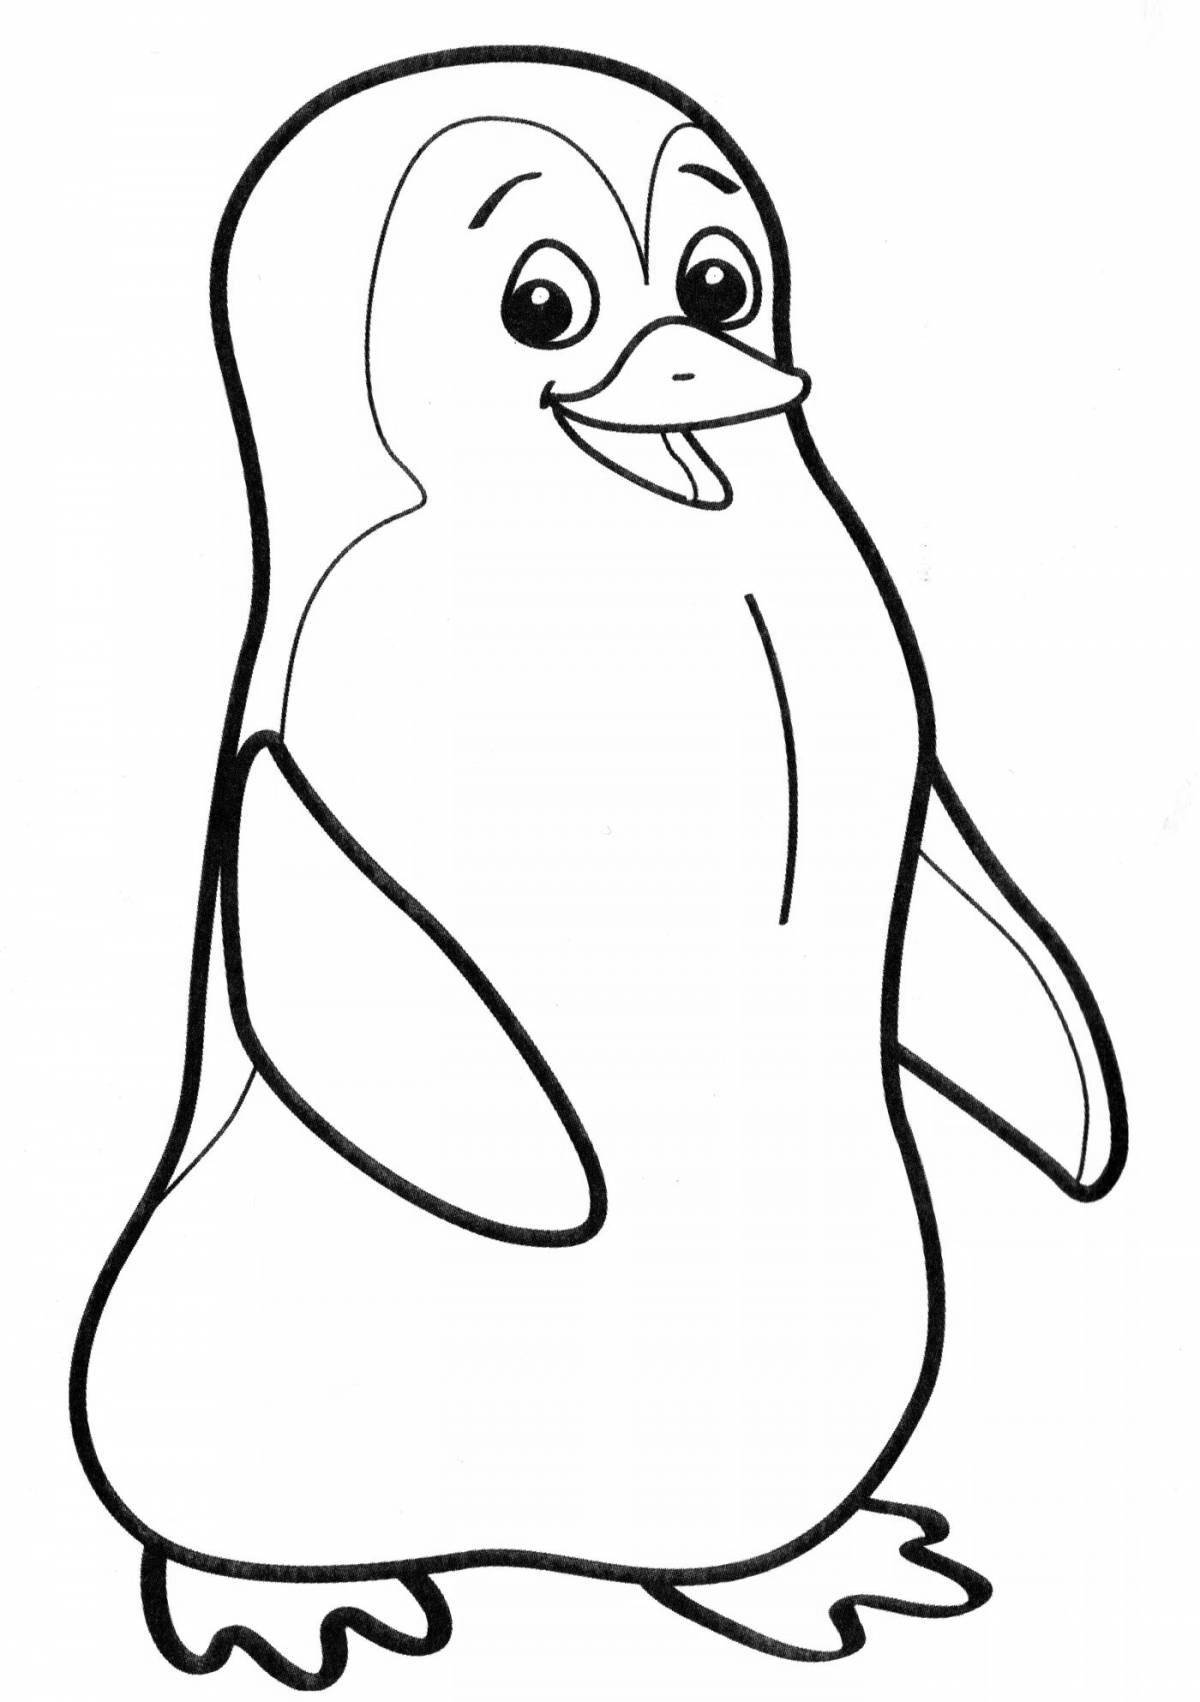 Cute little penguin coloring book